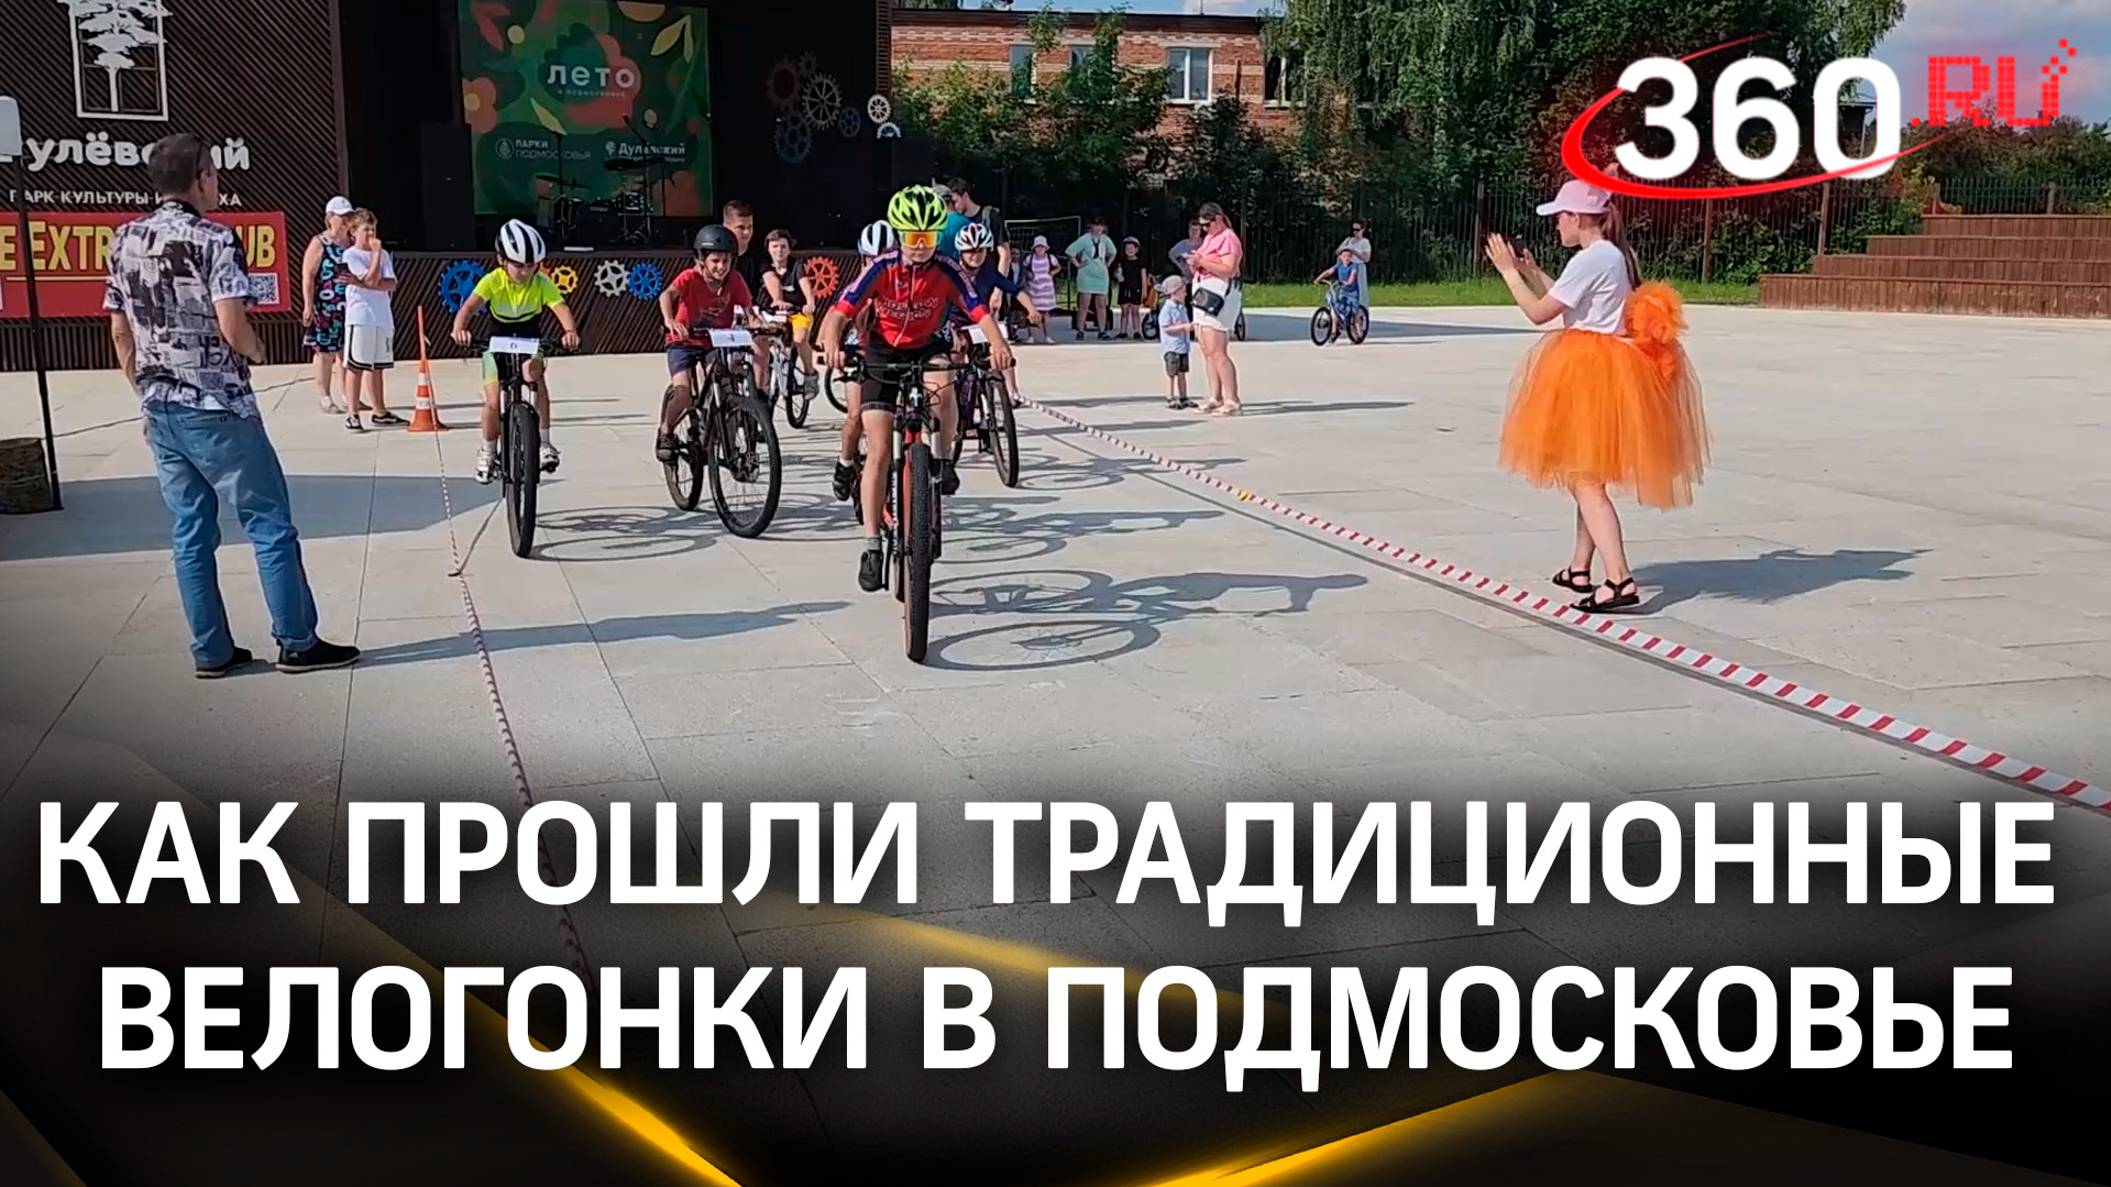 Дети и леди на велосипеде: как прошли традиционные велогонки в Подмосковье